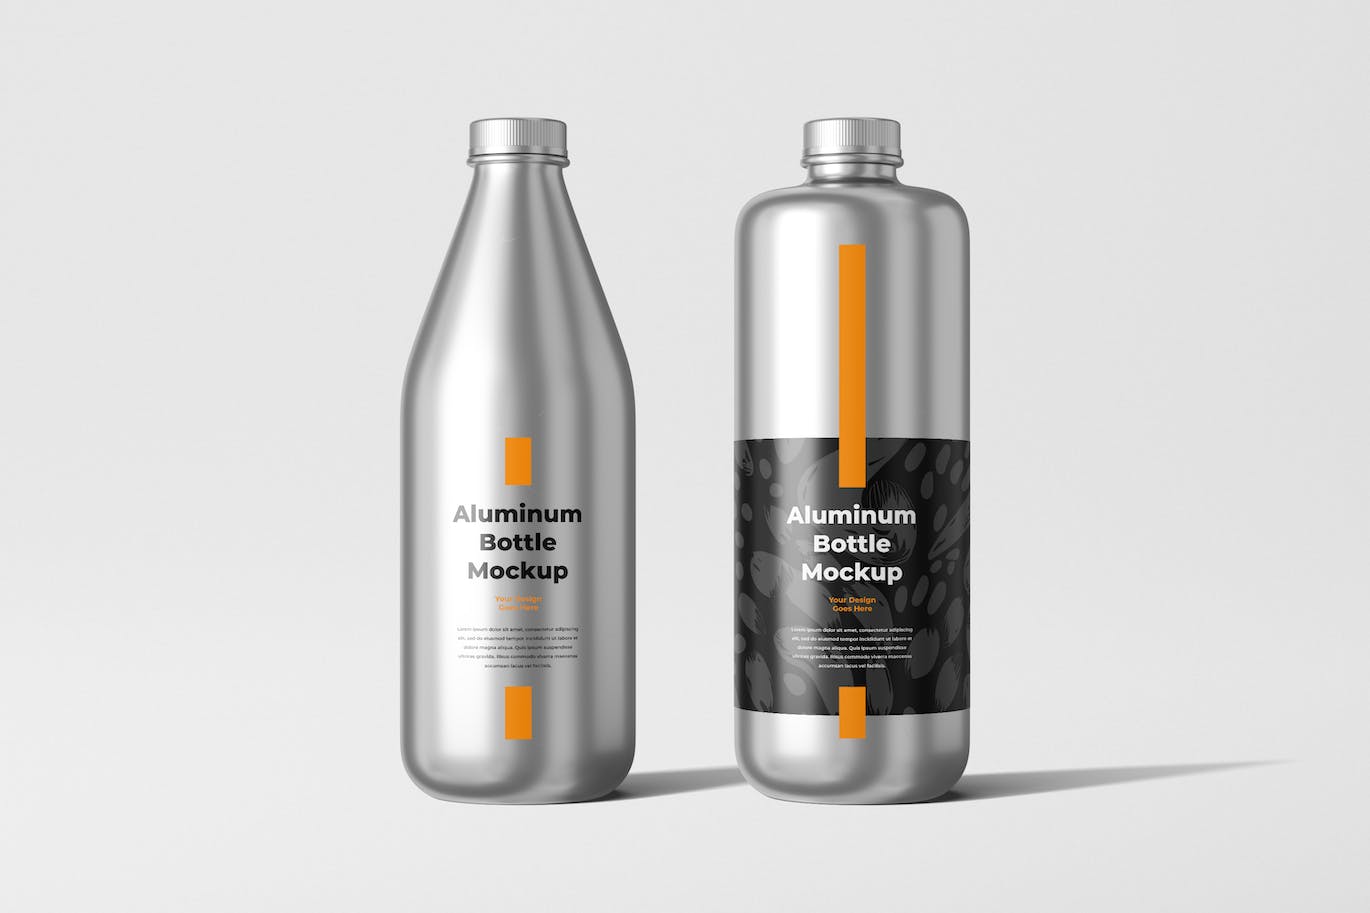 铝瓶饮水瓶包装设计样机 Aluminum Bottle Mockup 样机素材 第1张